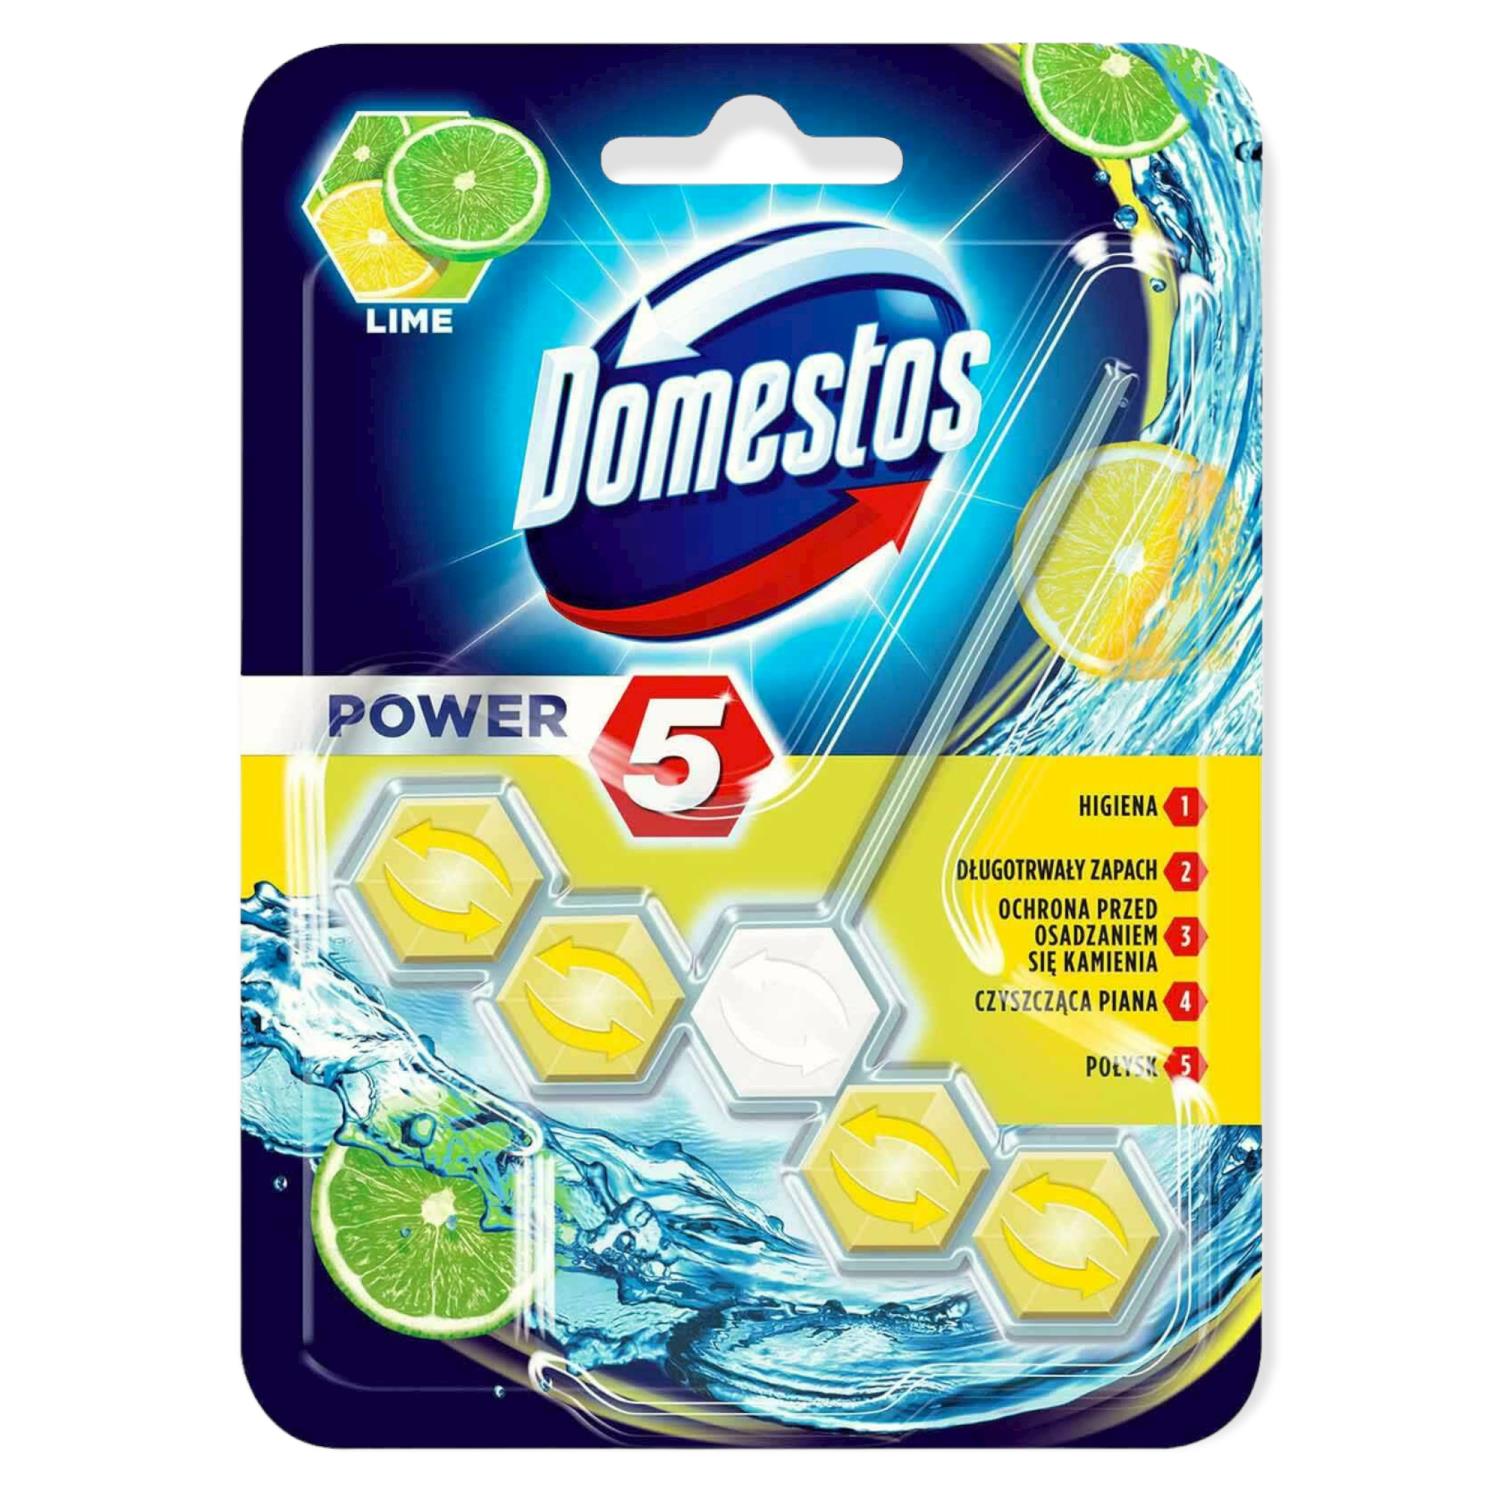 Domestos Lime Power5 Toilet Rim 55g